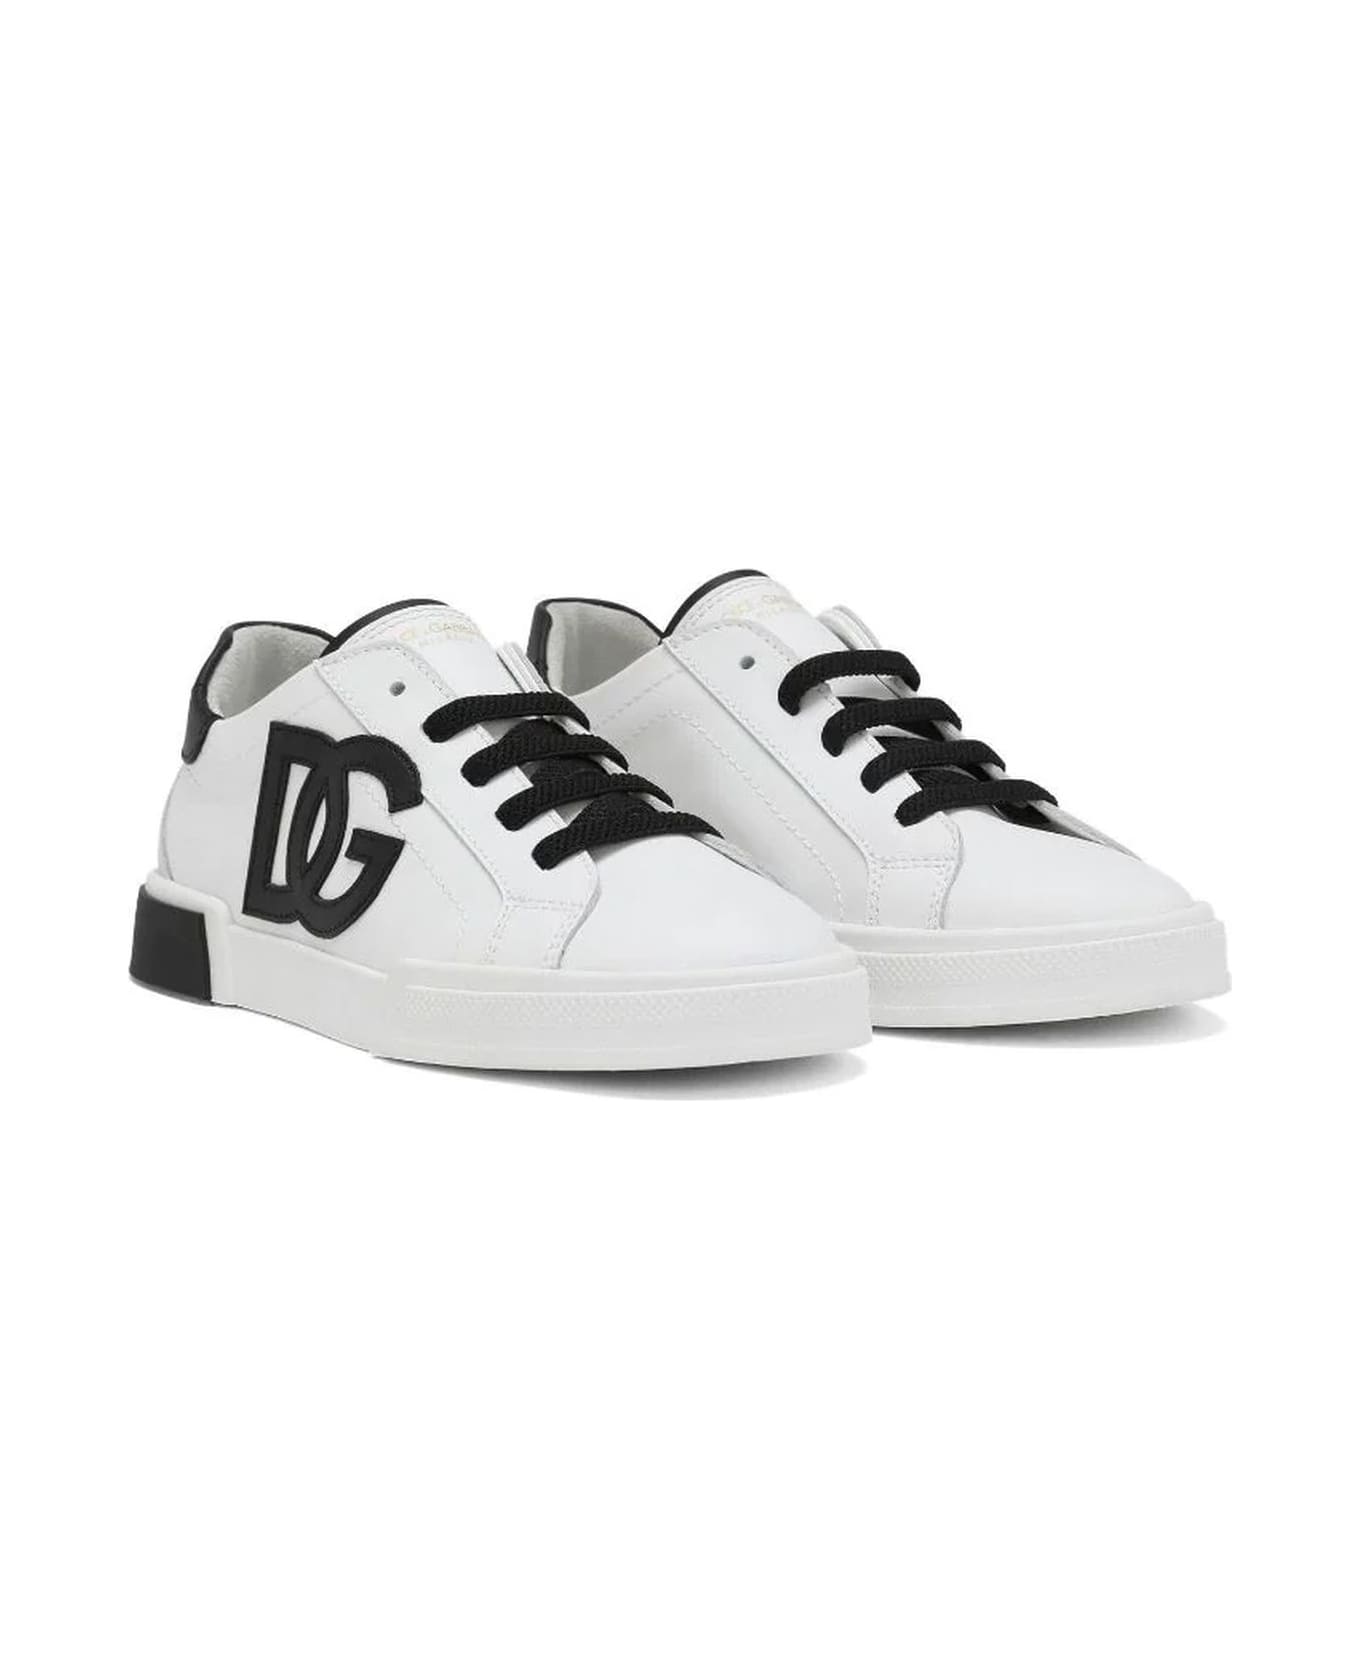 Dolce & Gabbana White Calf Leather Sneakers - Bianco Nero